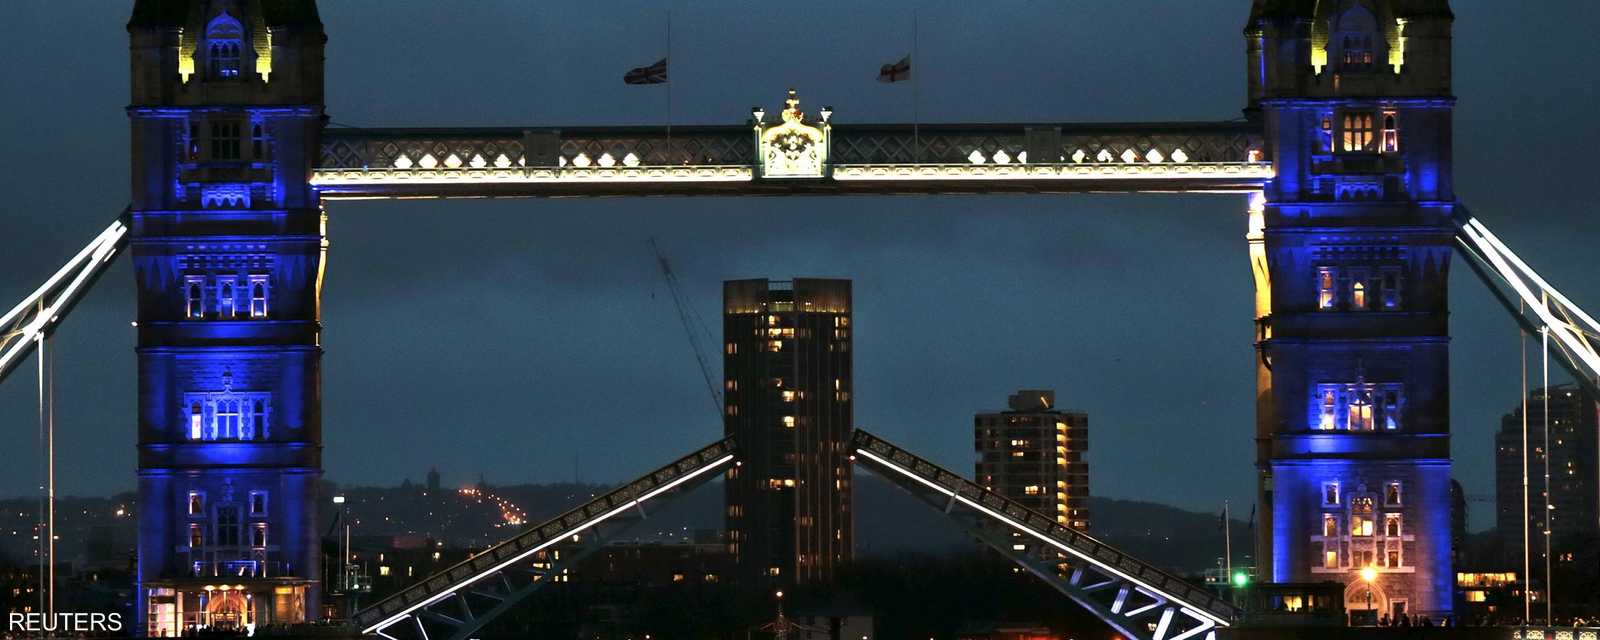 جسر البرج المعلق في لندن يكتسي بألوان العلم الفرنسي